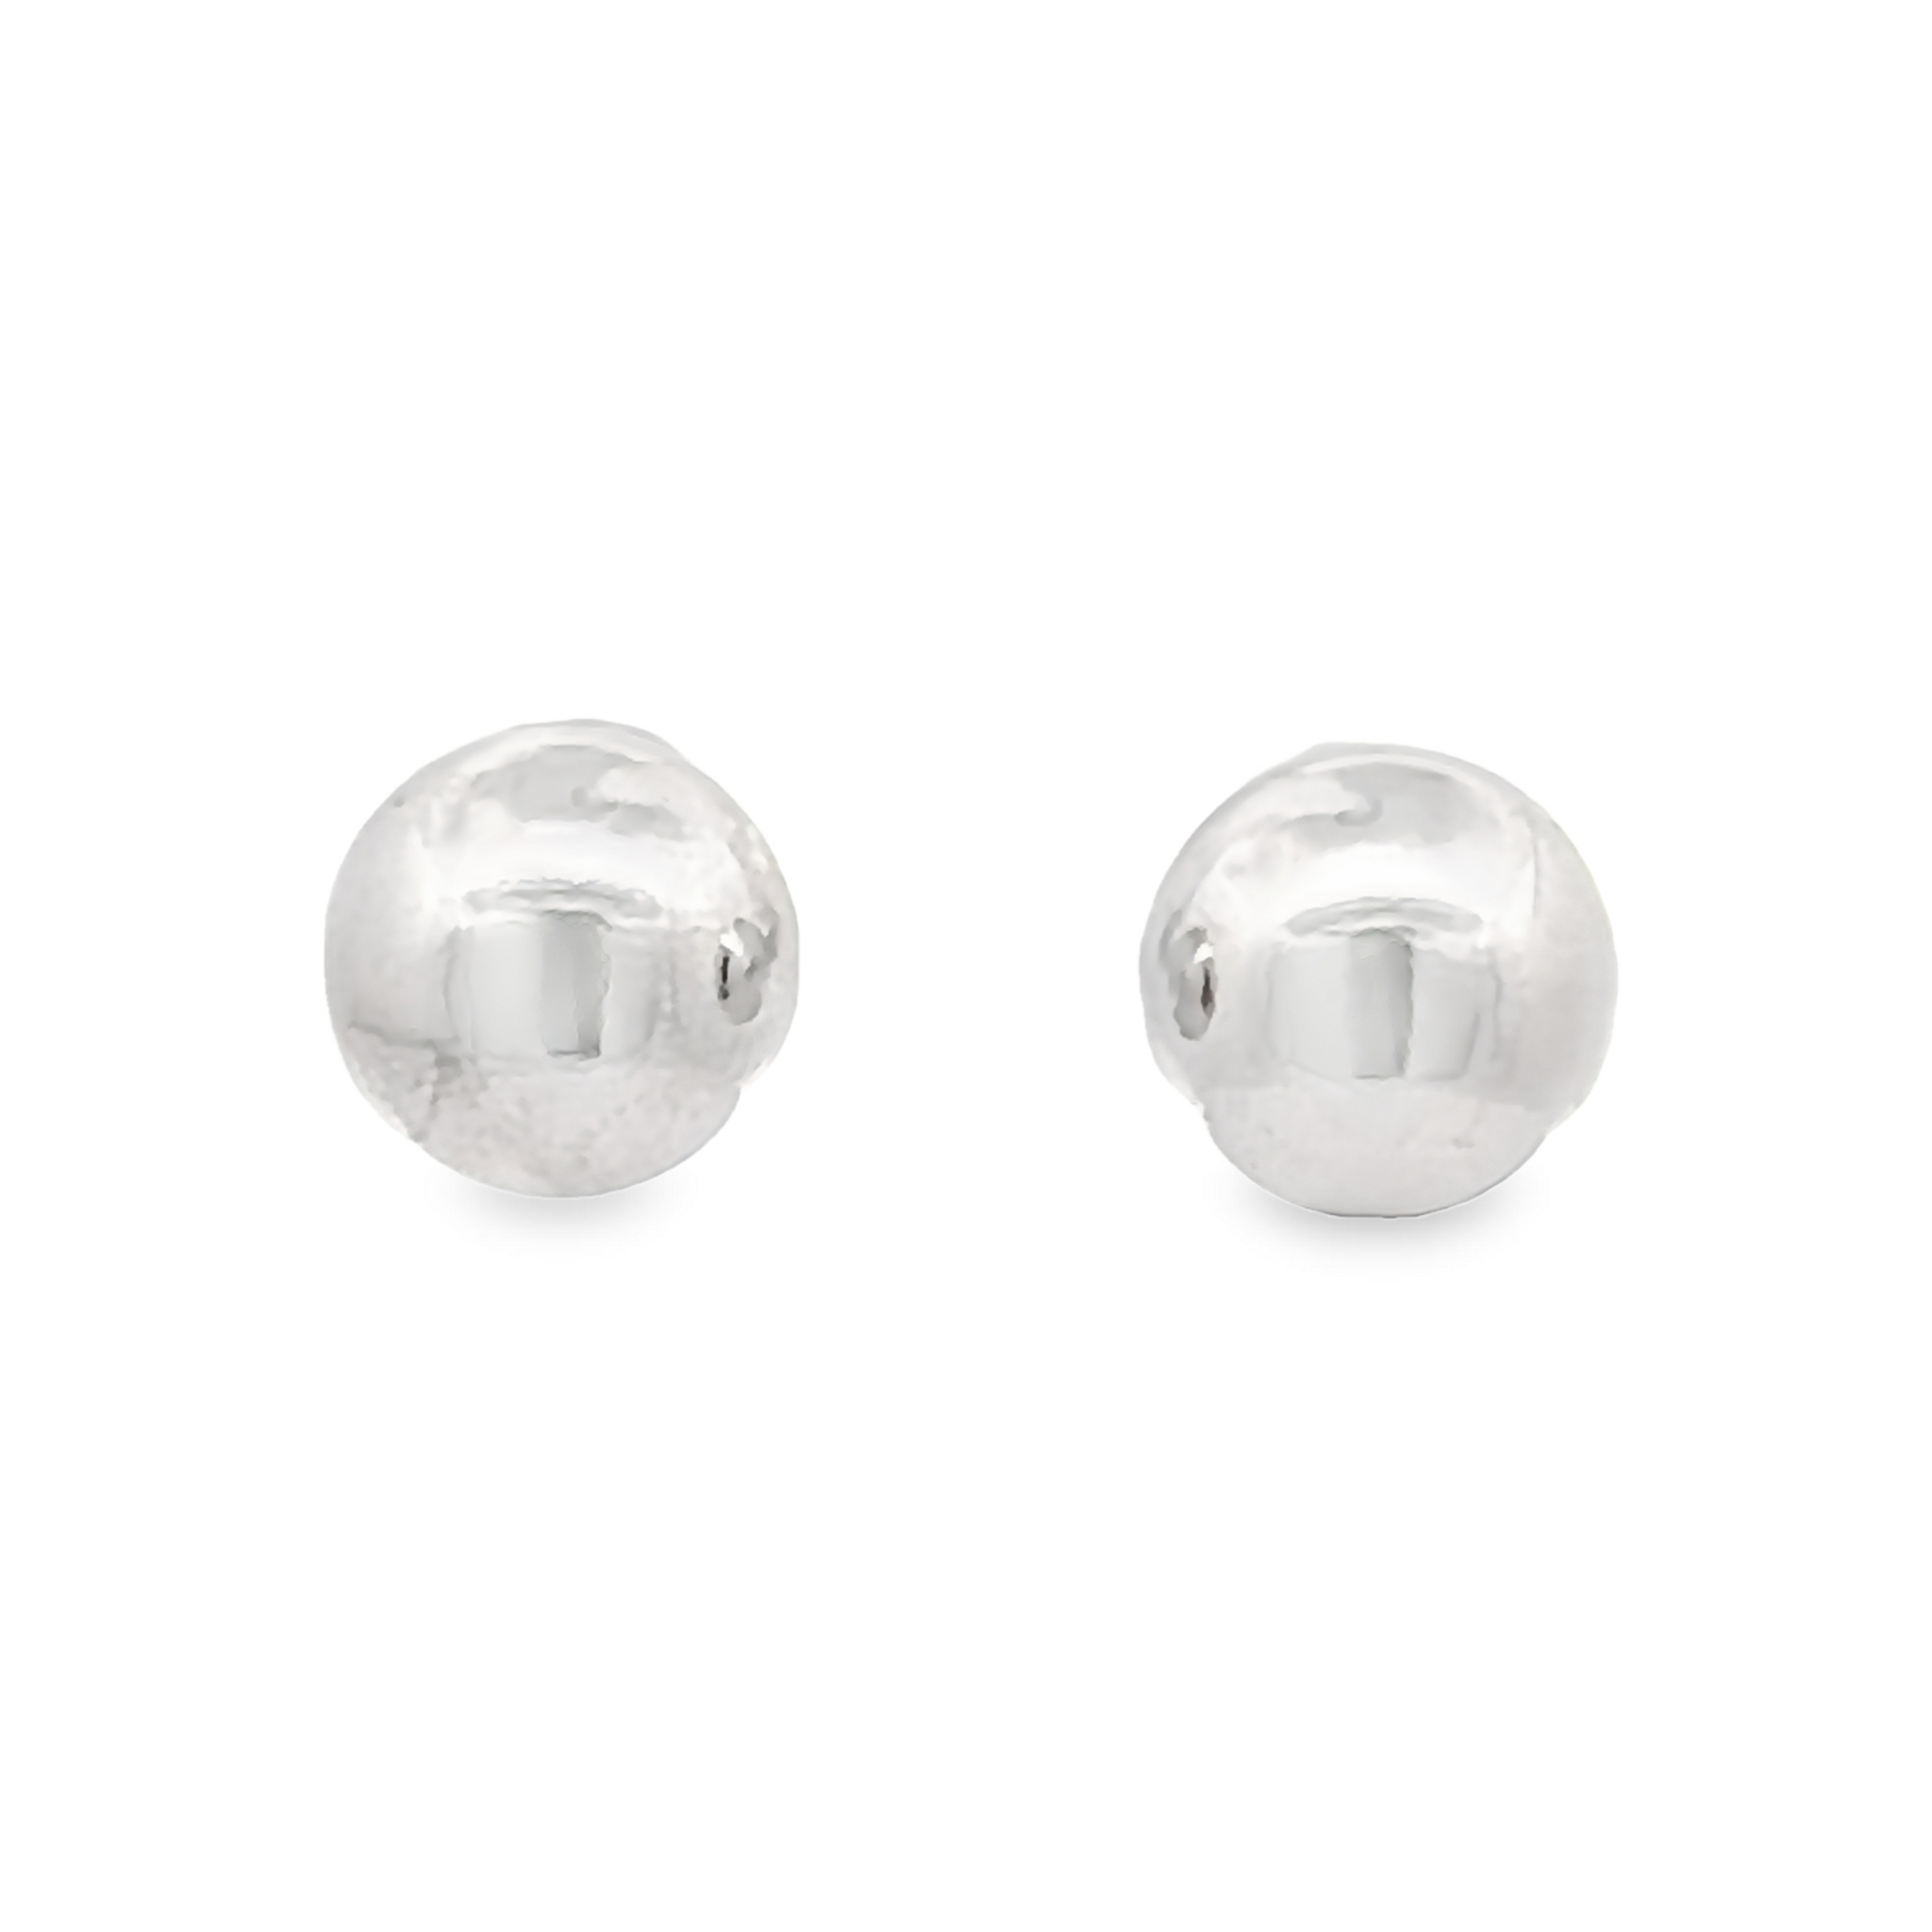 10mm Sterling Silver Ball Stud Earrings